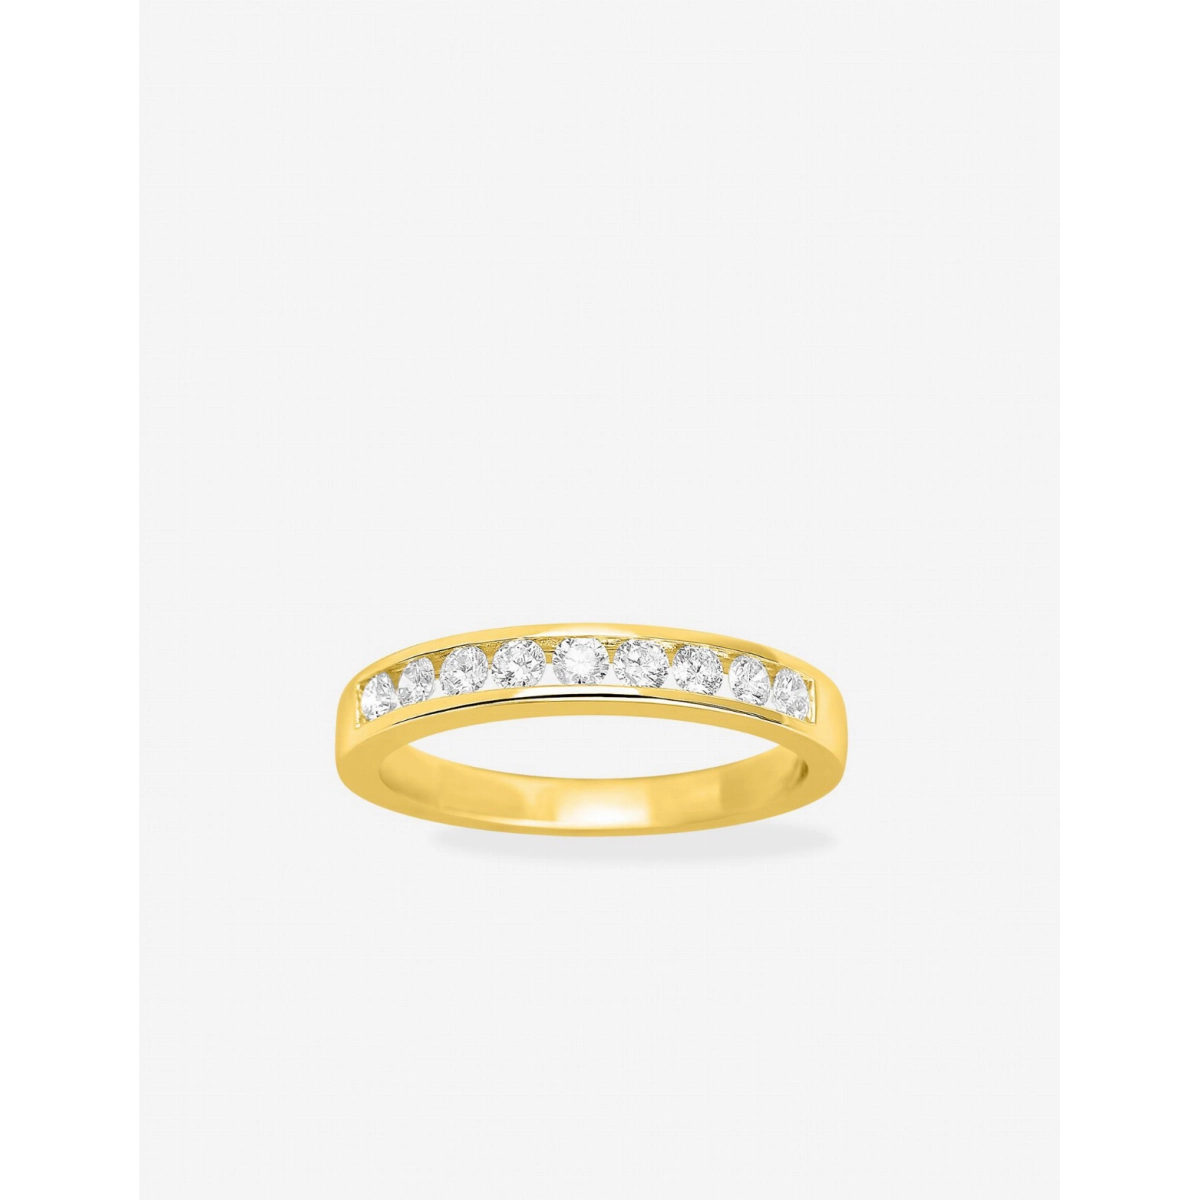 Anel de Casamento com diamante 0.40ct GHSI 18Kt Ouro amarelo 1.1586.20.14 Tamanho espanhol: 54